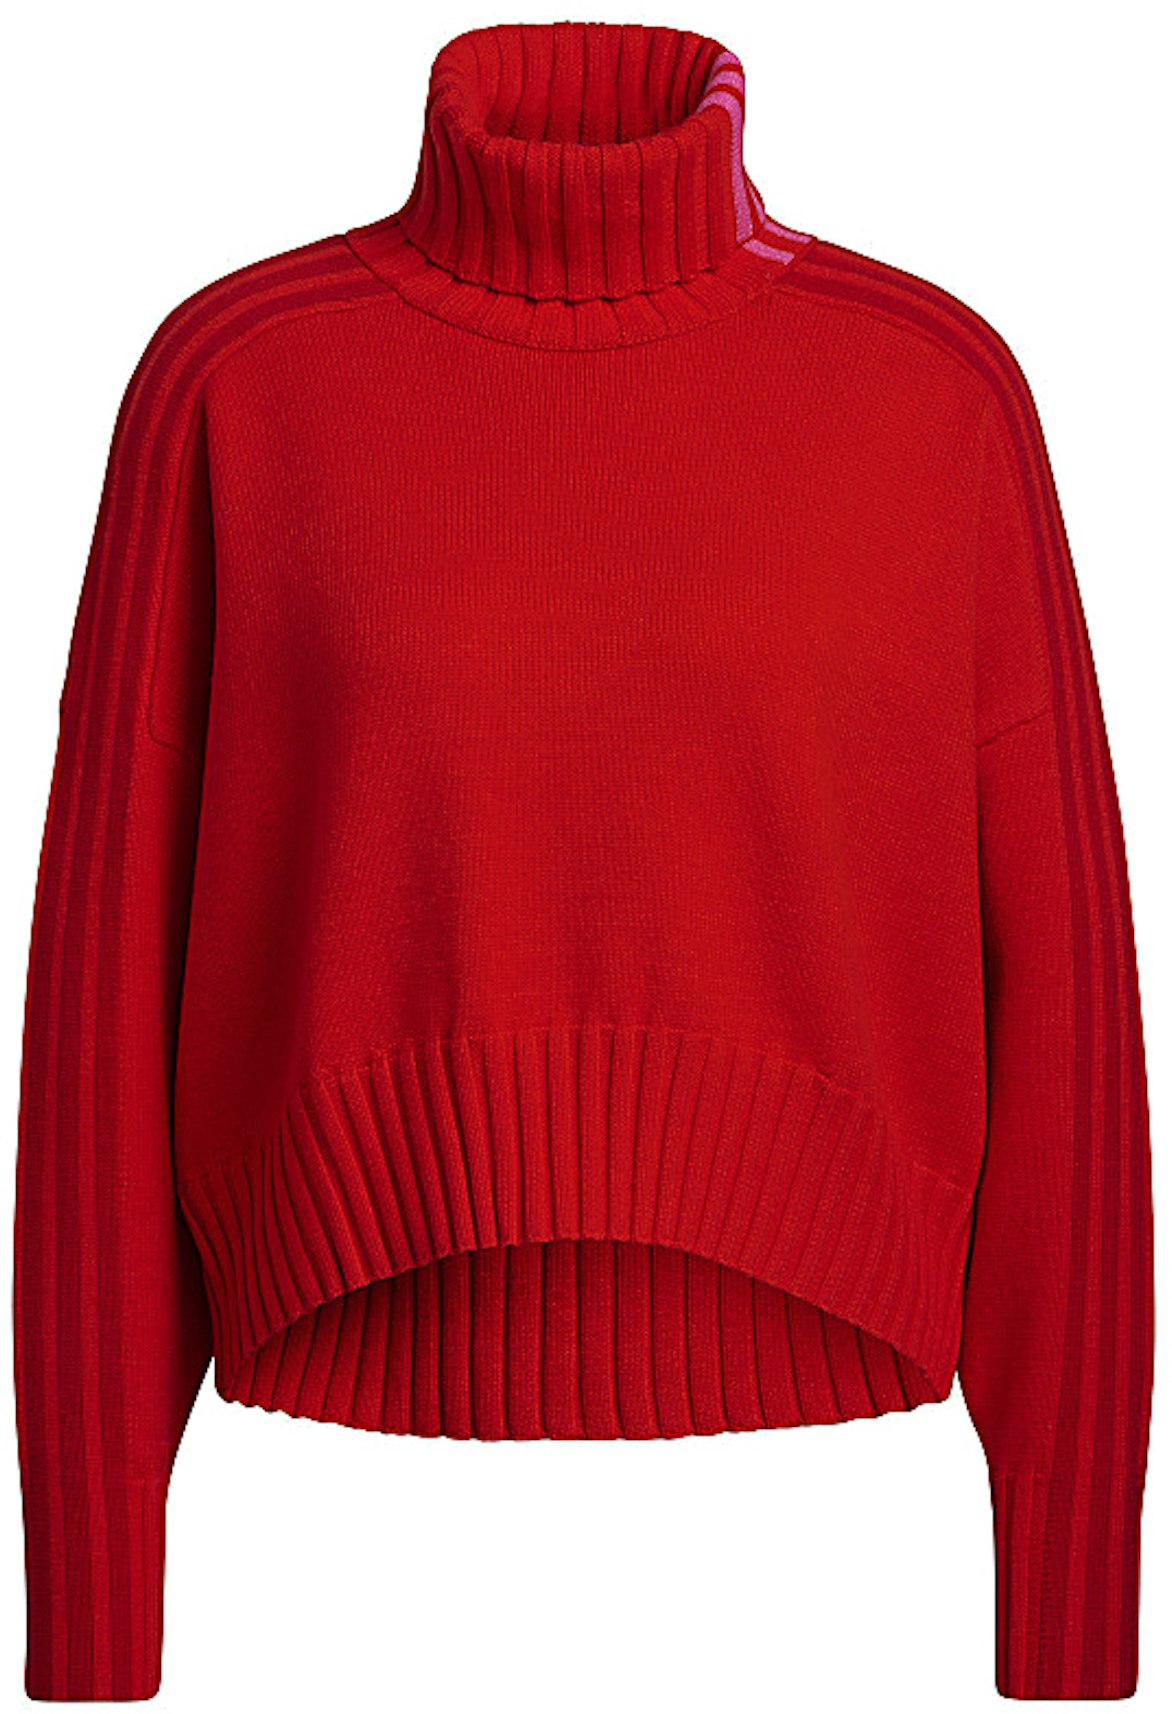 Beleefd filter vermijden adidas Ivy Park Turtleneck Crop Sweater Red - SS22 - US